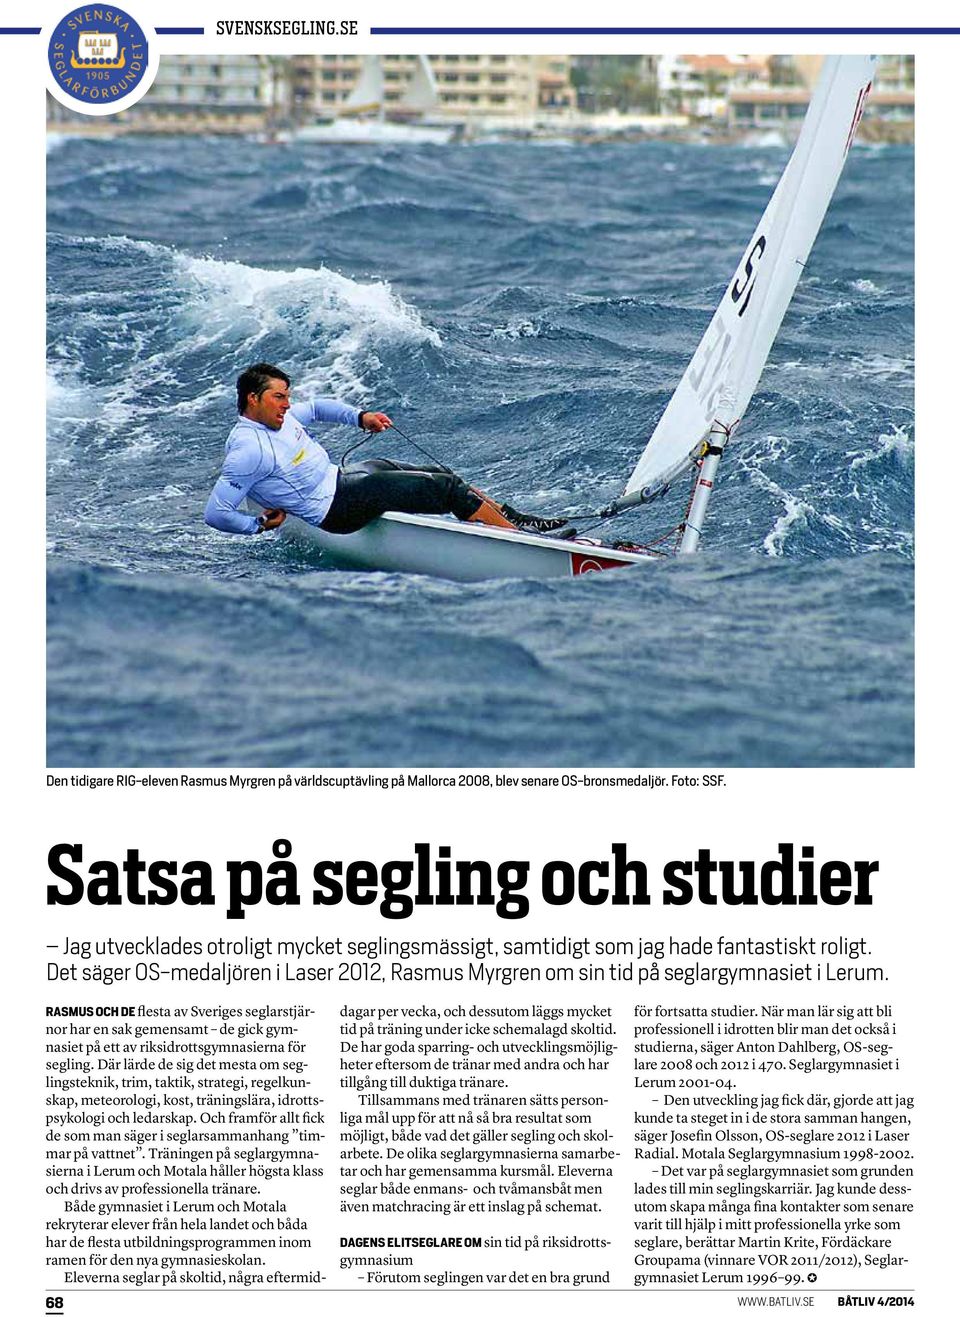 Det säger OS-medaljören i Laser 2012, Rasmus Myrgren om sin tid på seglargymnasiet i Lerum.